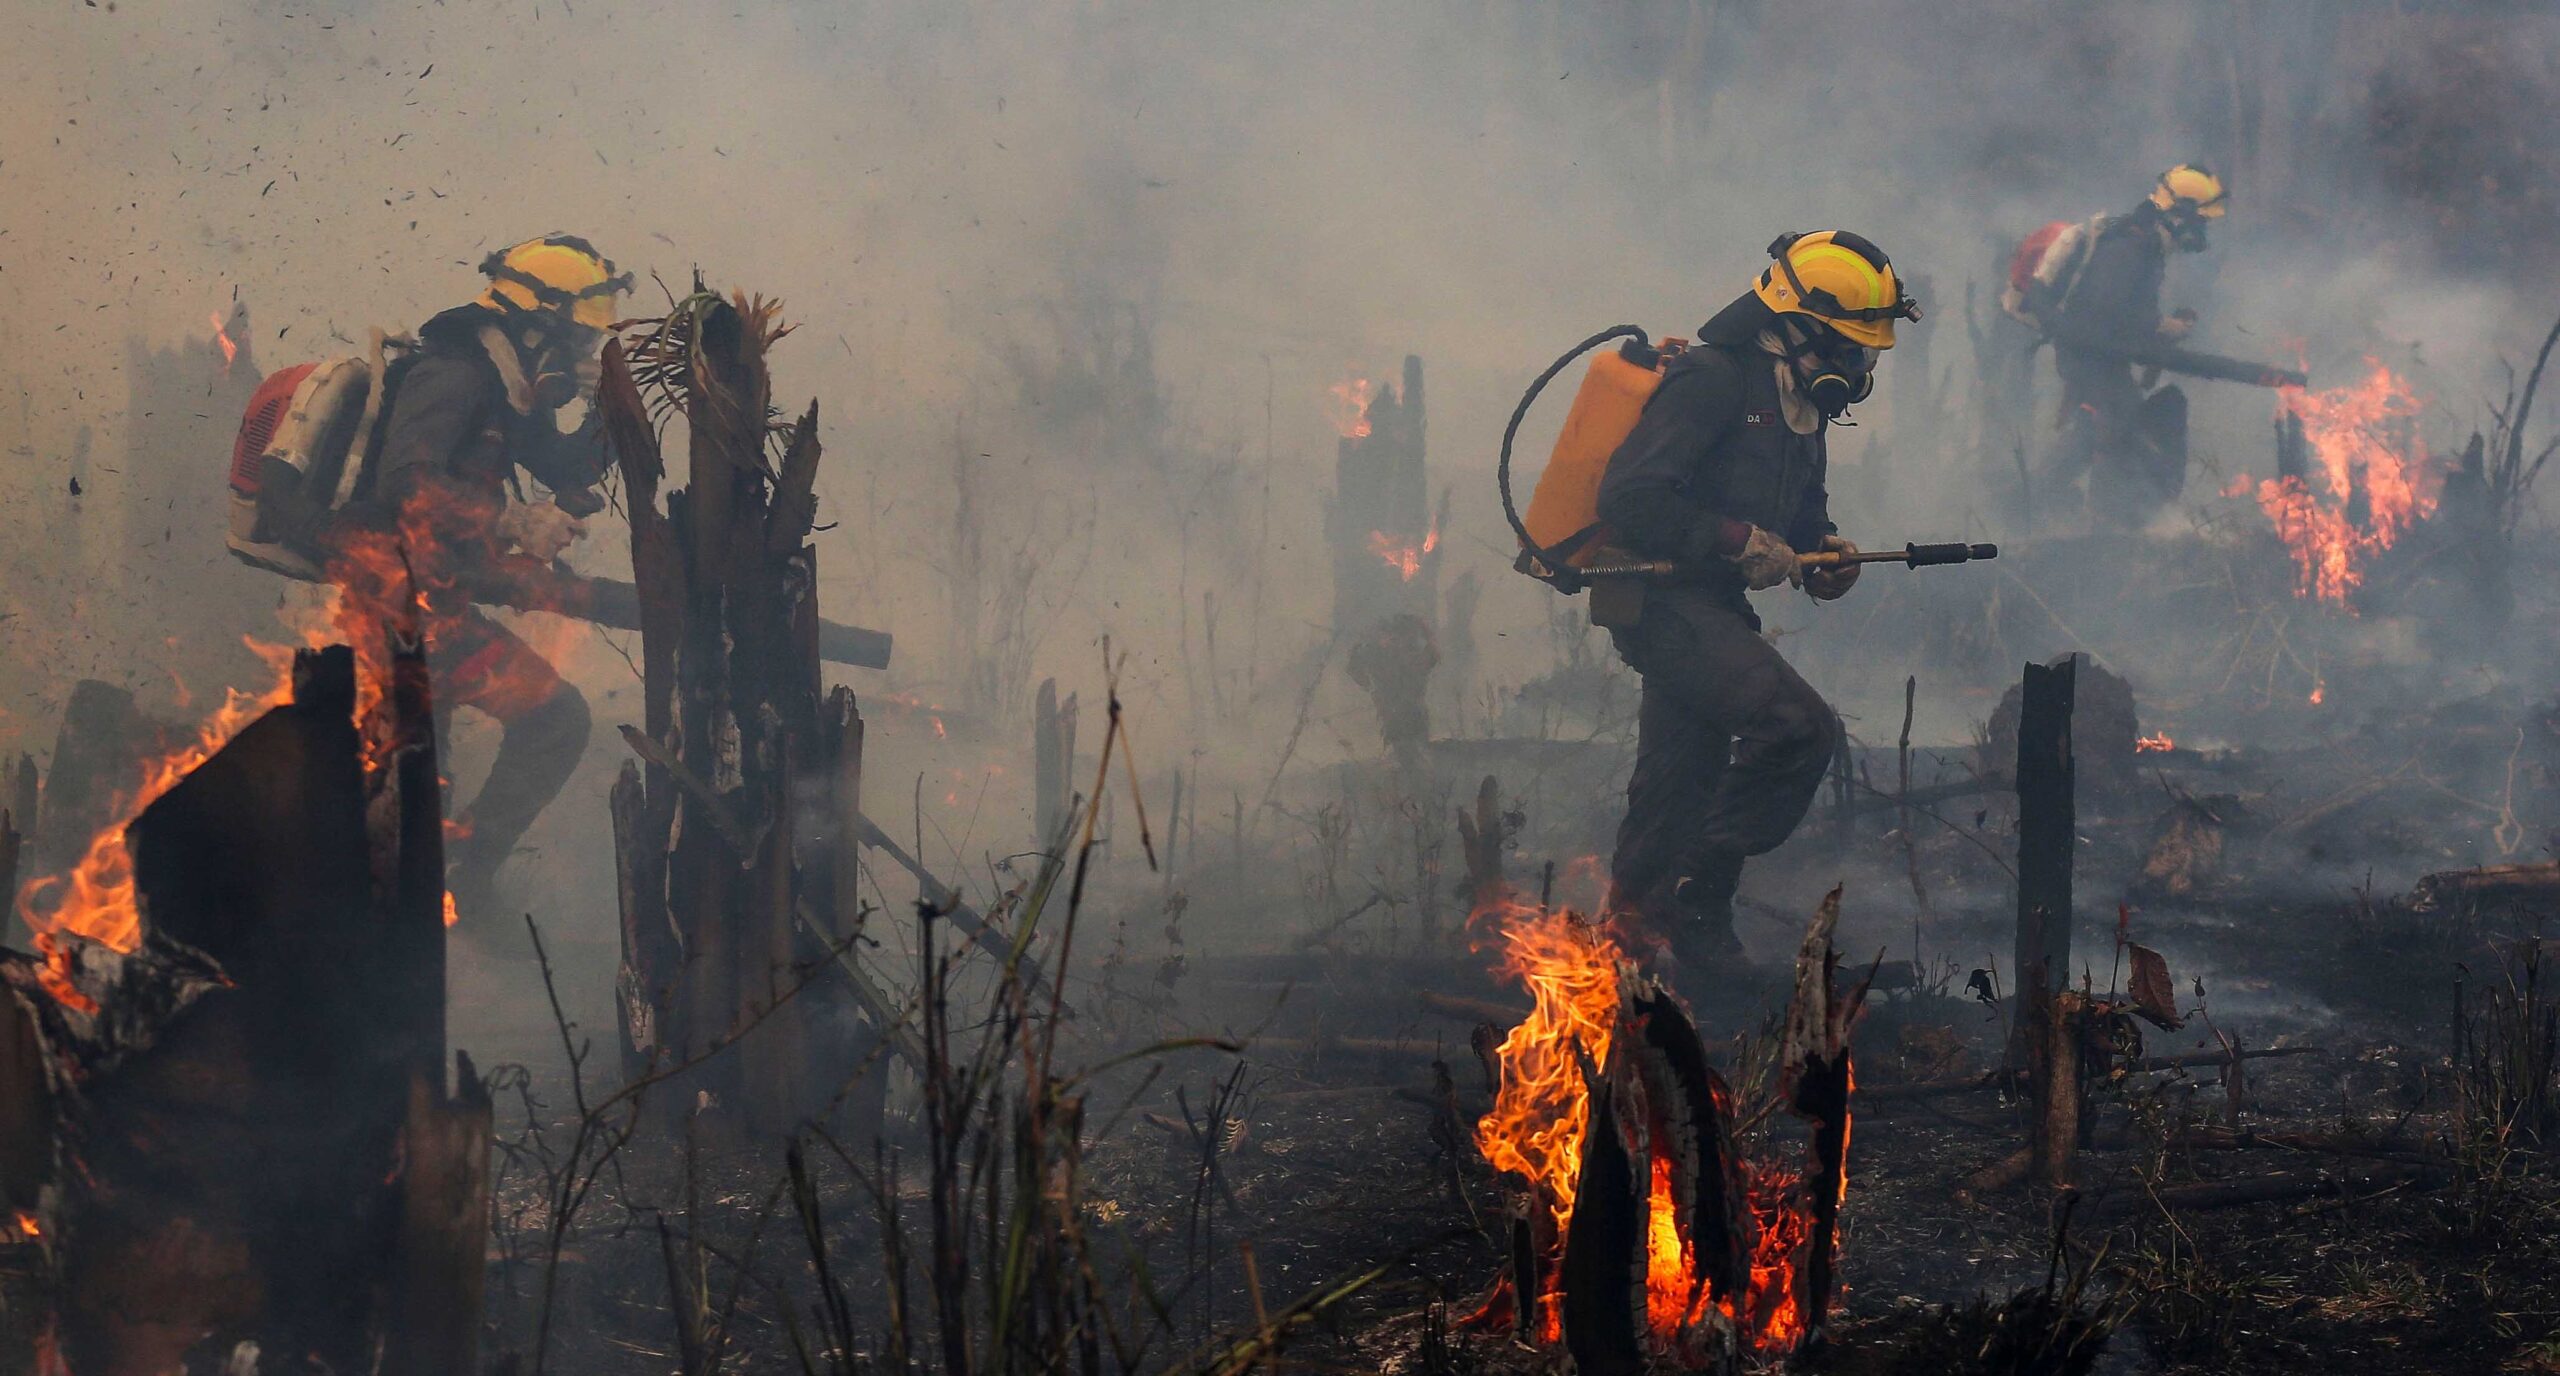 Brasil, el país que habría sufrido los peores incendios forestales en más de 10 años